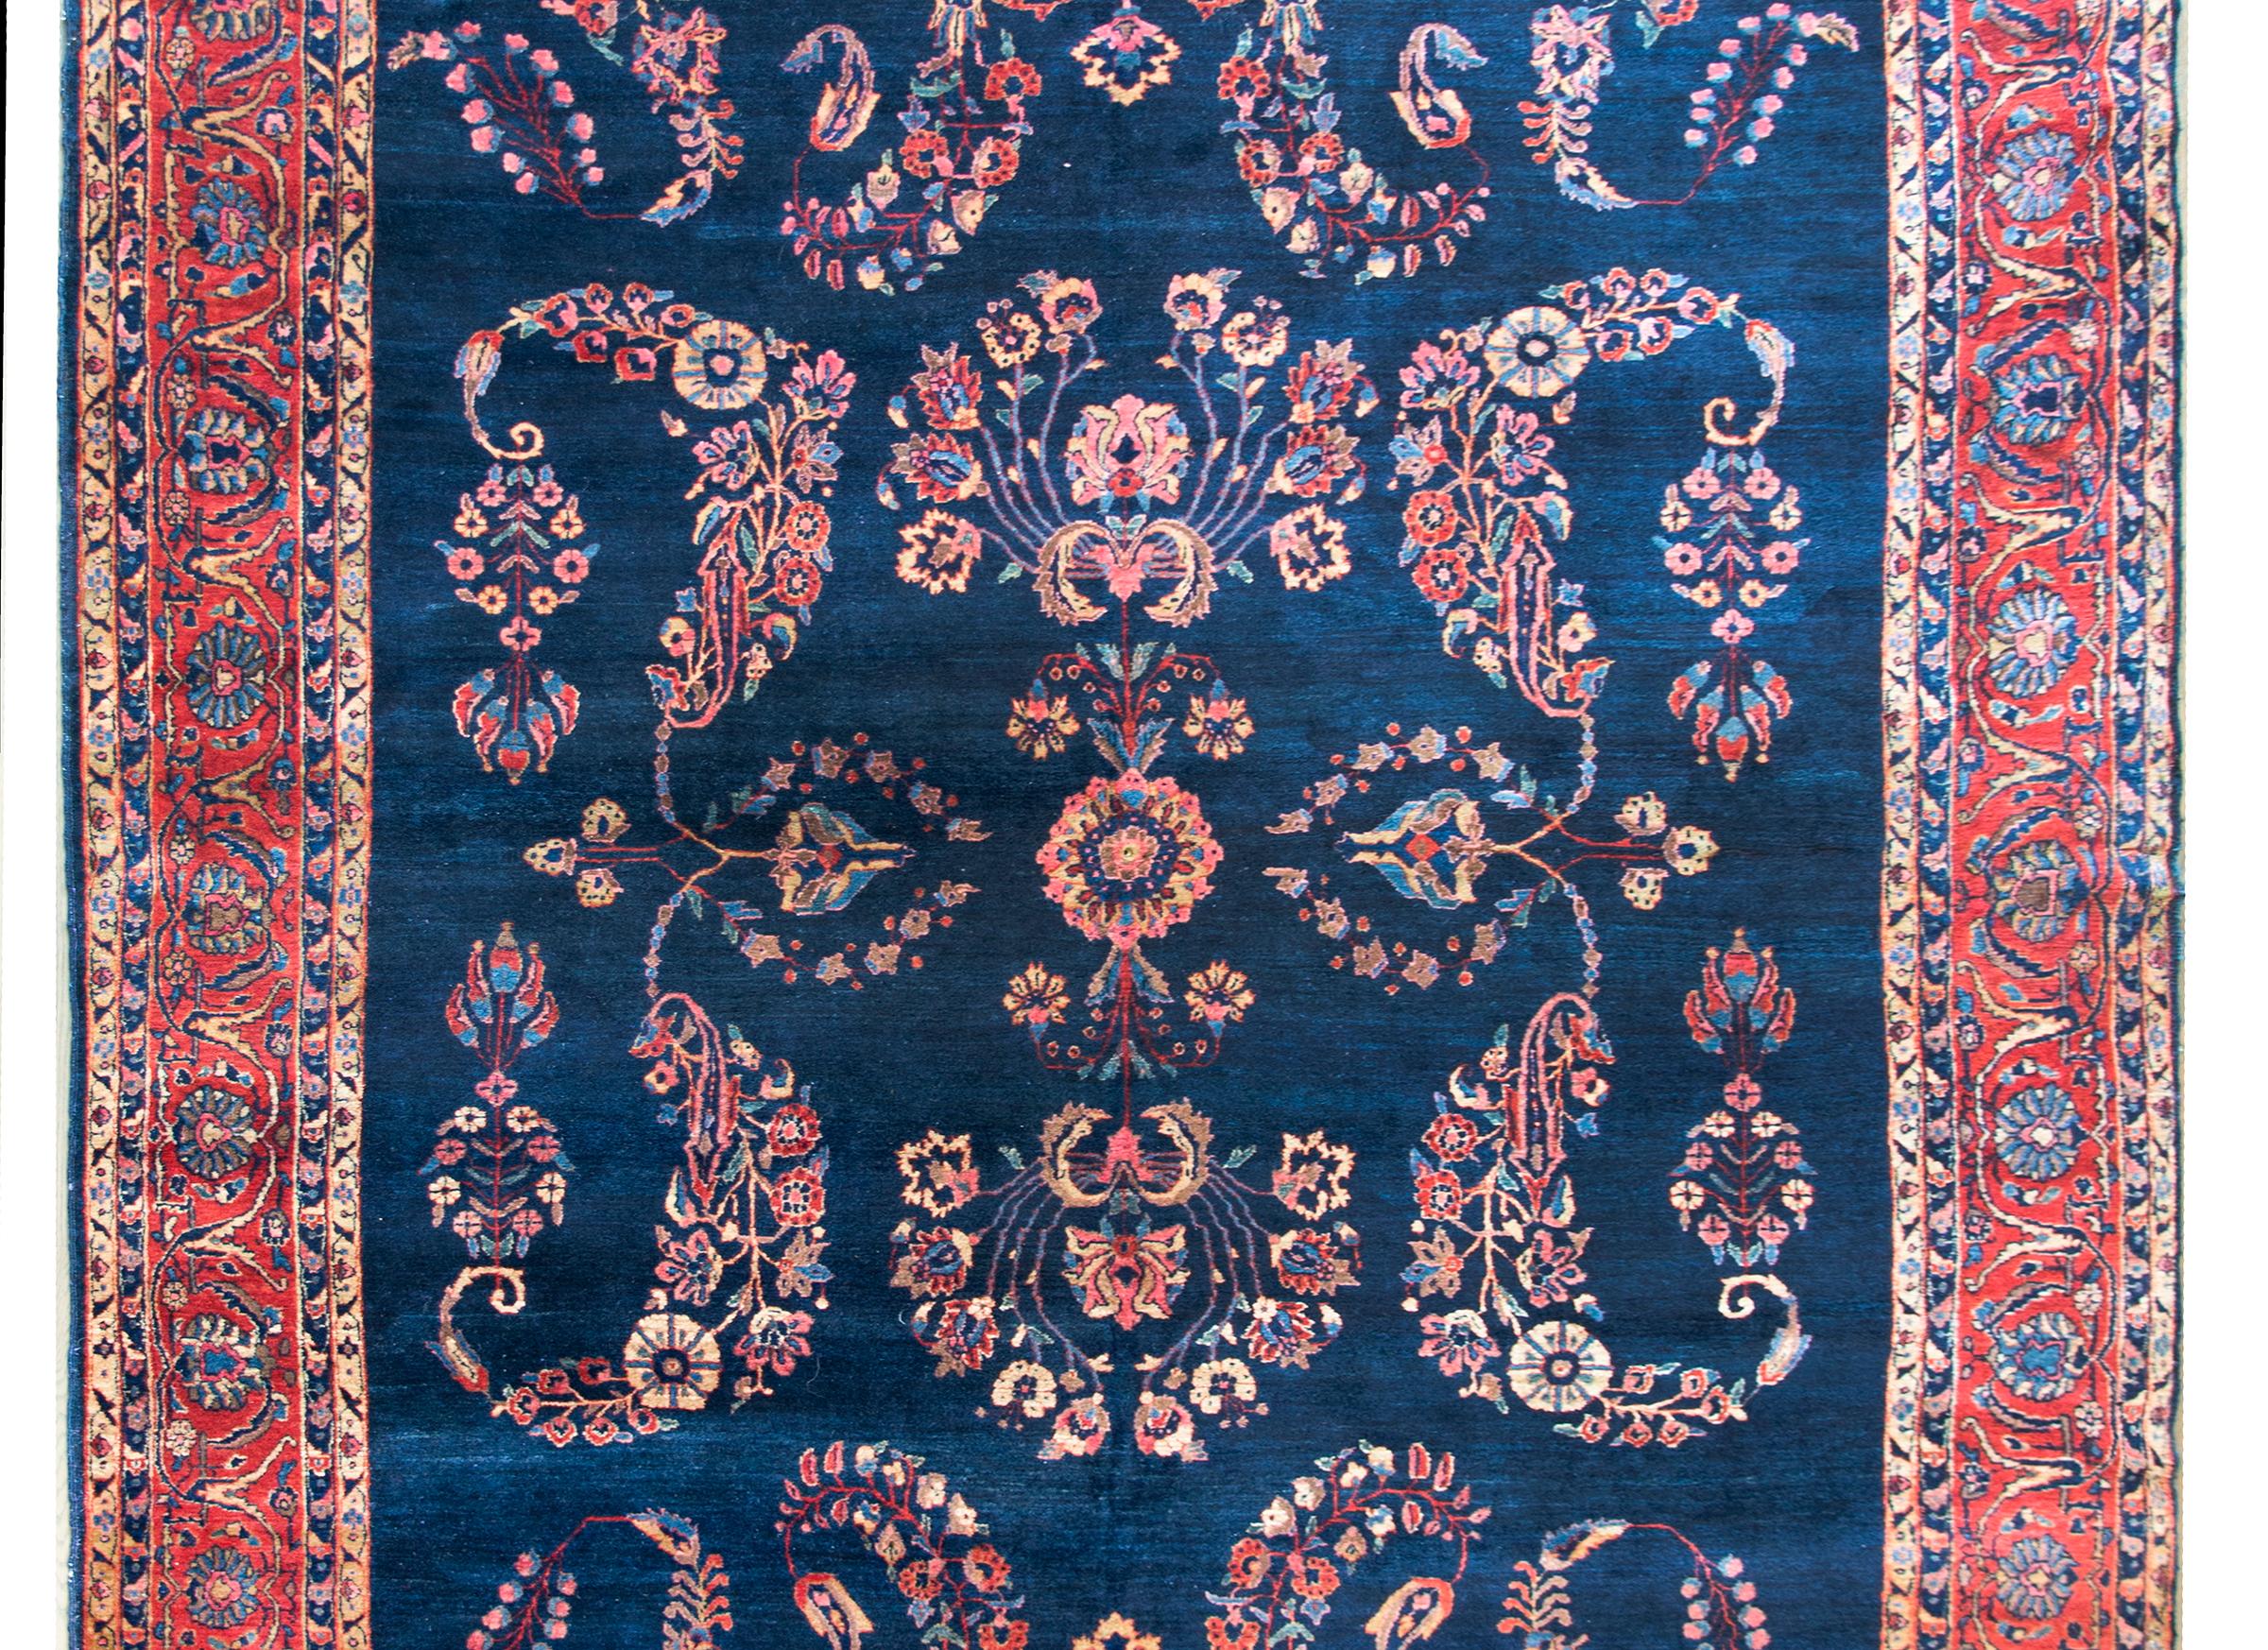 Magnifique tapis persan Sarouk Mohajeran du début du 20e siècle, avec un grand motif floral en miroir tissé dans les couleurs traditionnelles de Farouk, notamment le cramoisi, le rose, le crème et l'indigo clair et foncé, et entouré d'une large